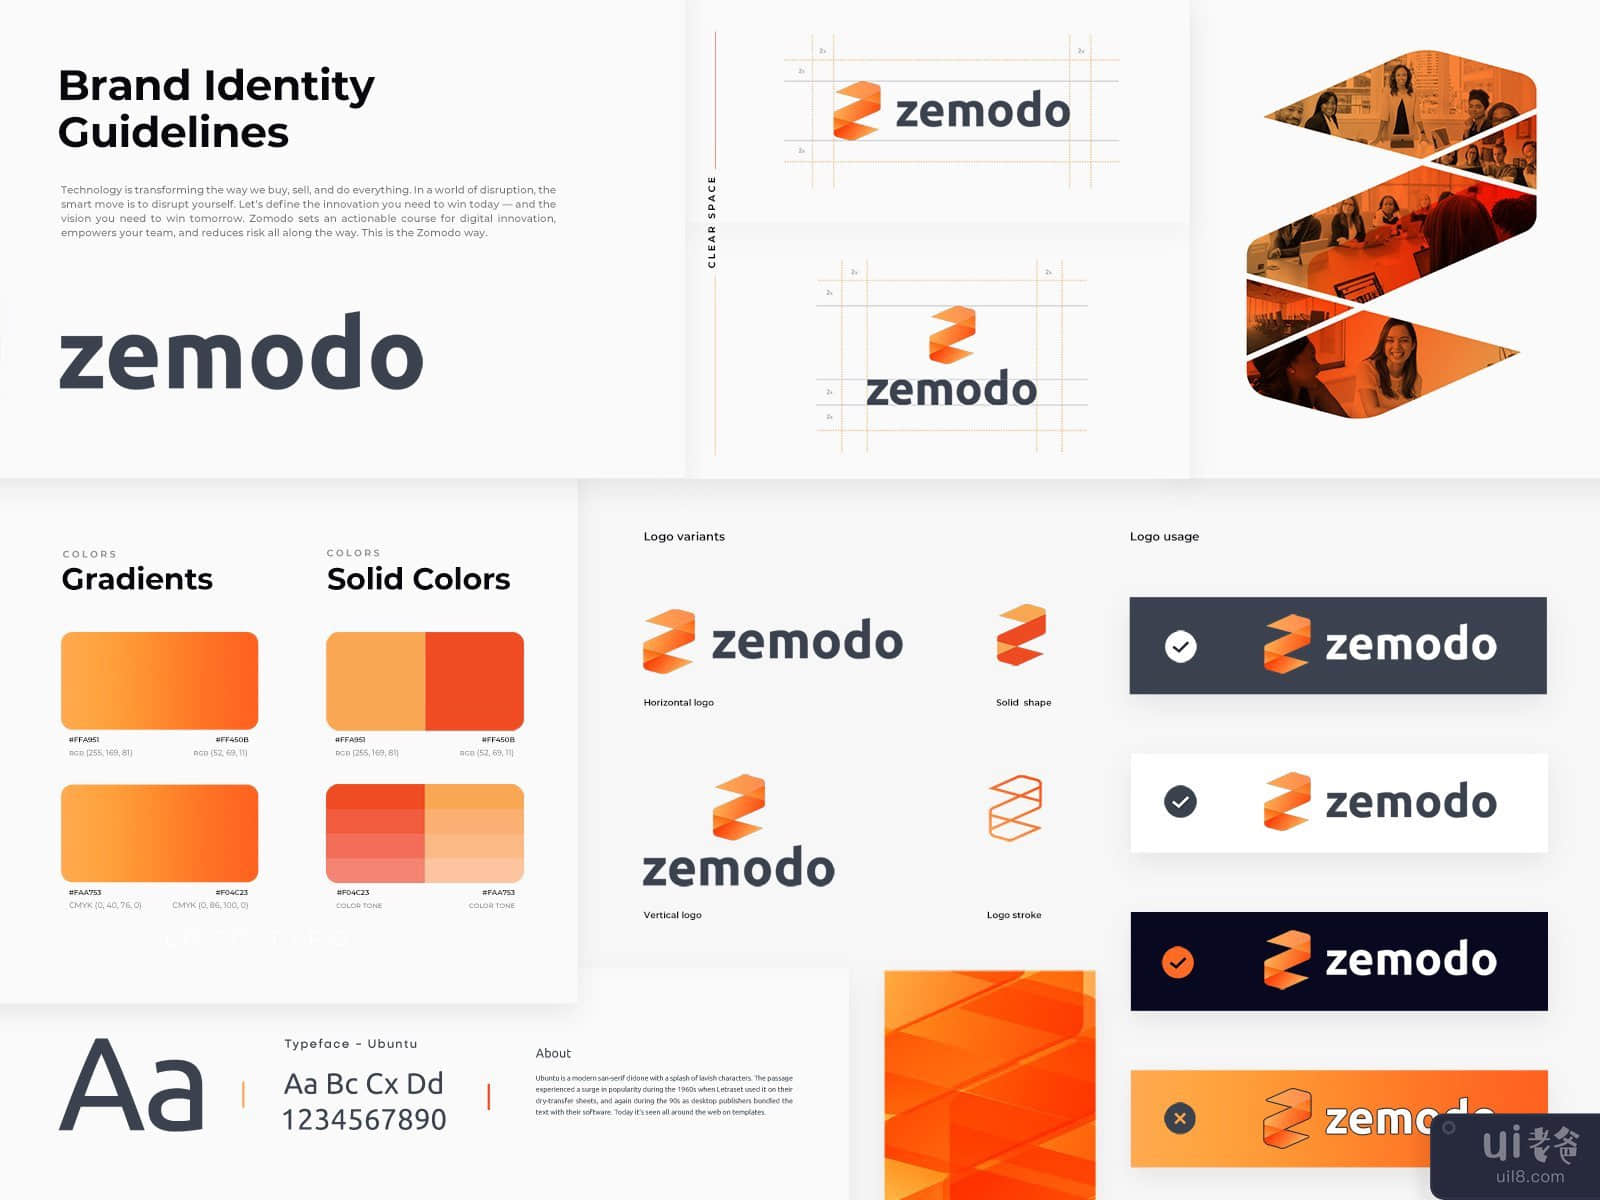 Zemodo - Brand Identity